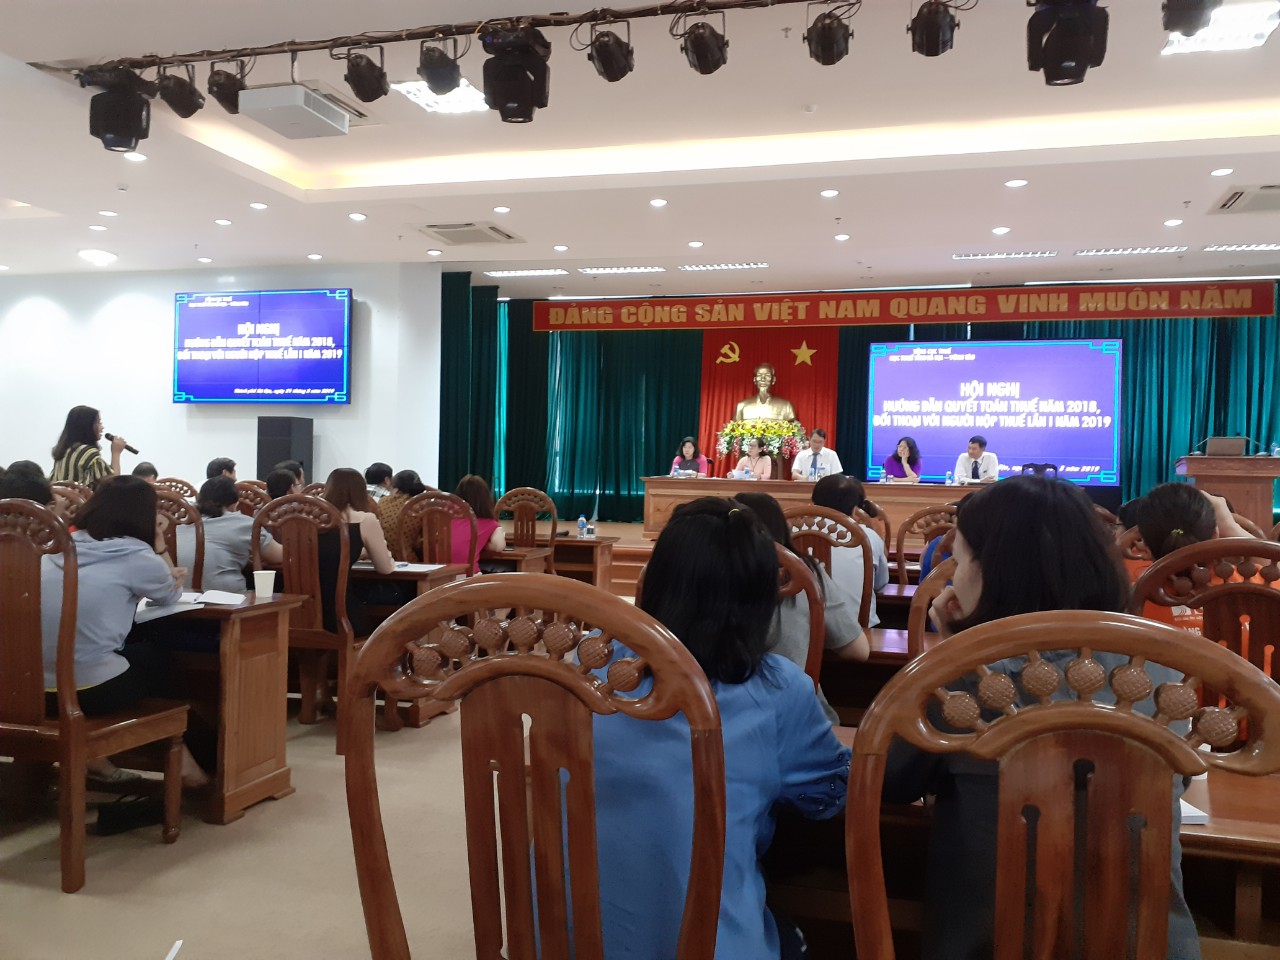 Hội nghị hướng dẫn quyết toán thuế 2018, đối thoại với người nộp thuế lần 1 năm 2019 Tỉnh Bà Rịa – Vũng Tàu